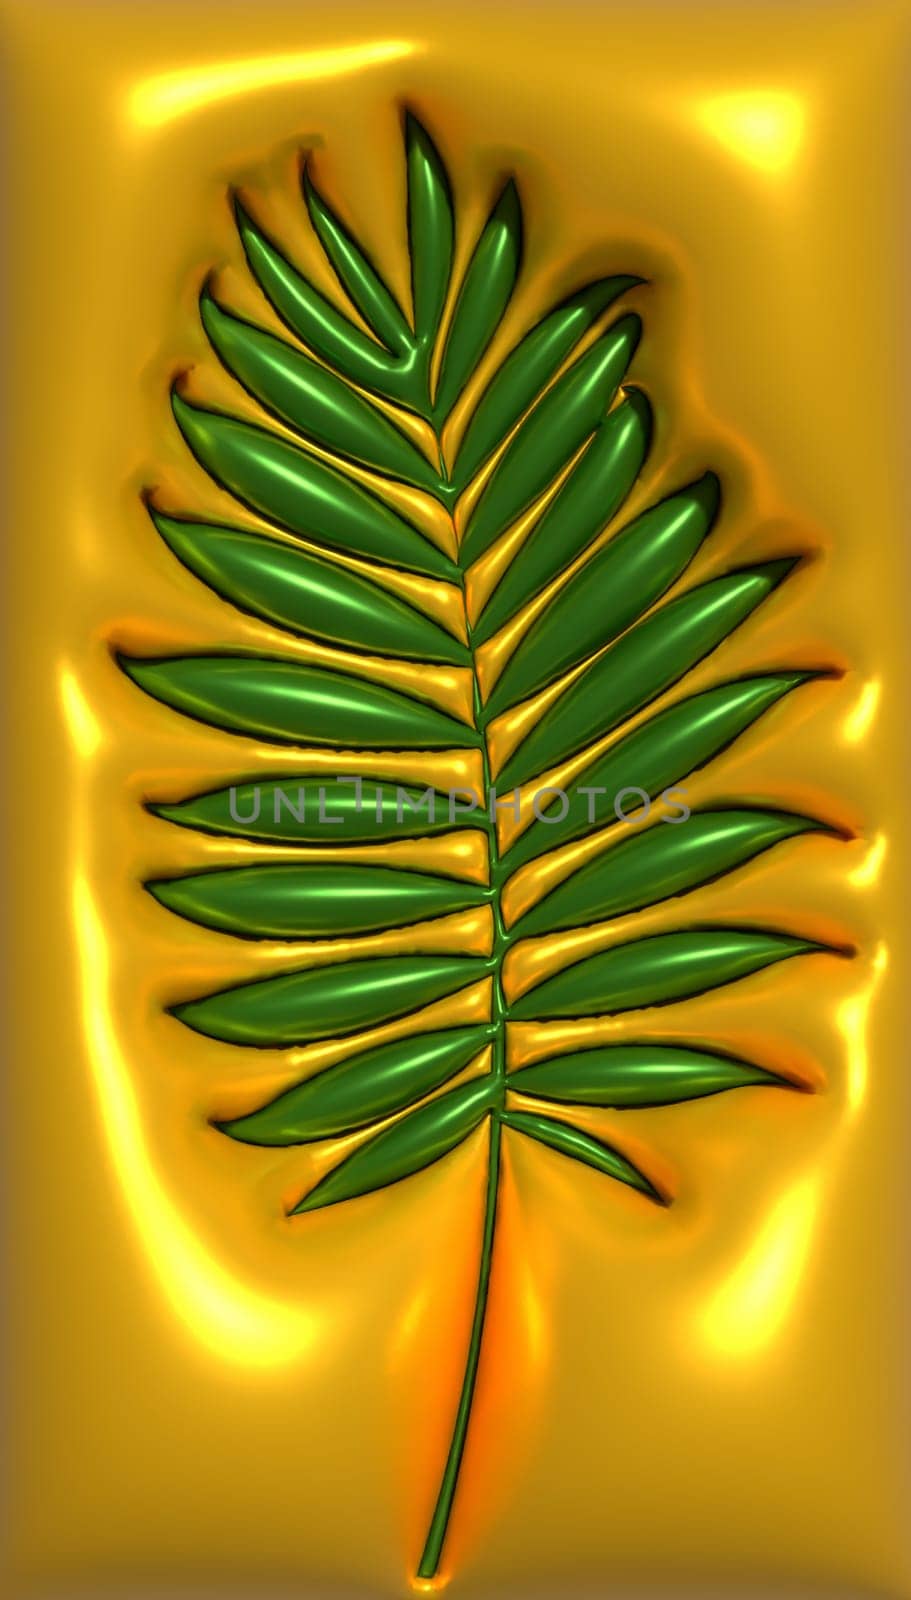 Green palm leaf on orange background, 3D rendering illustration